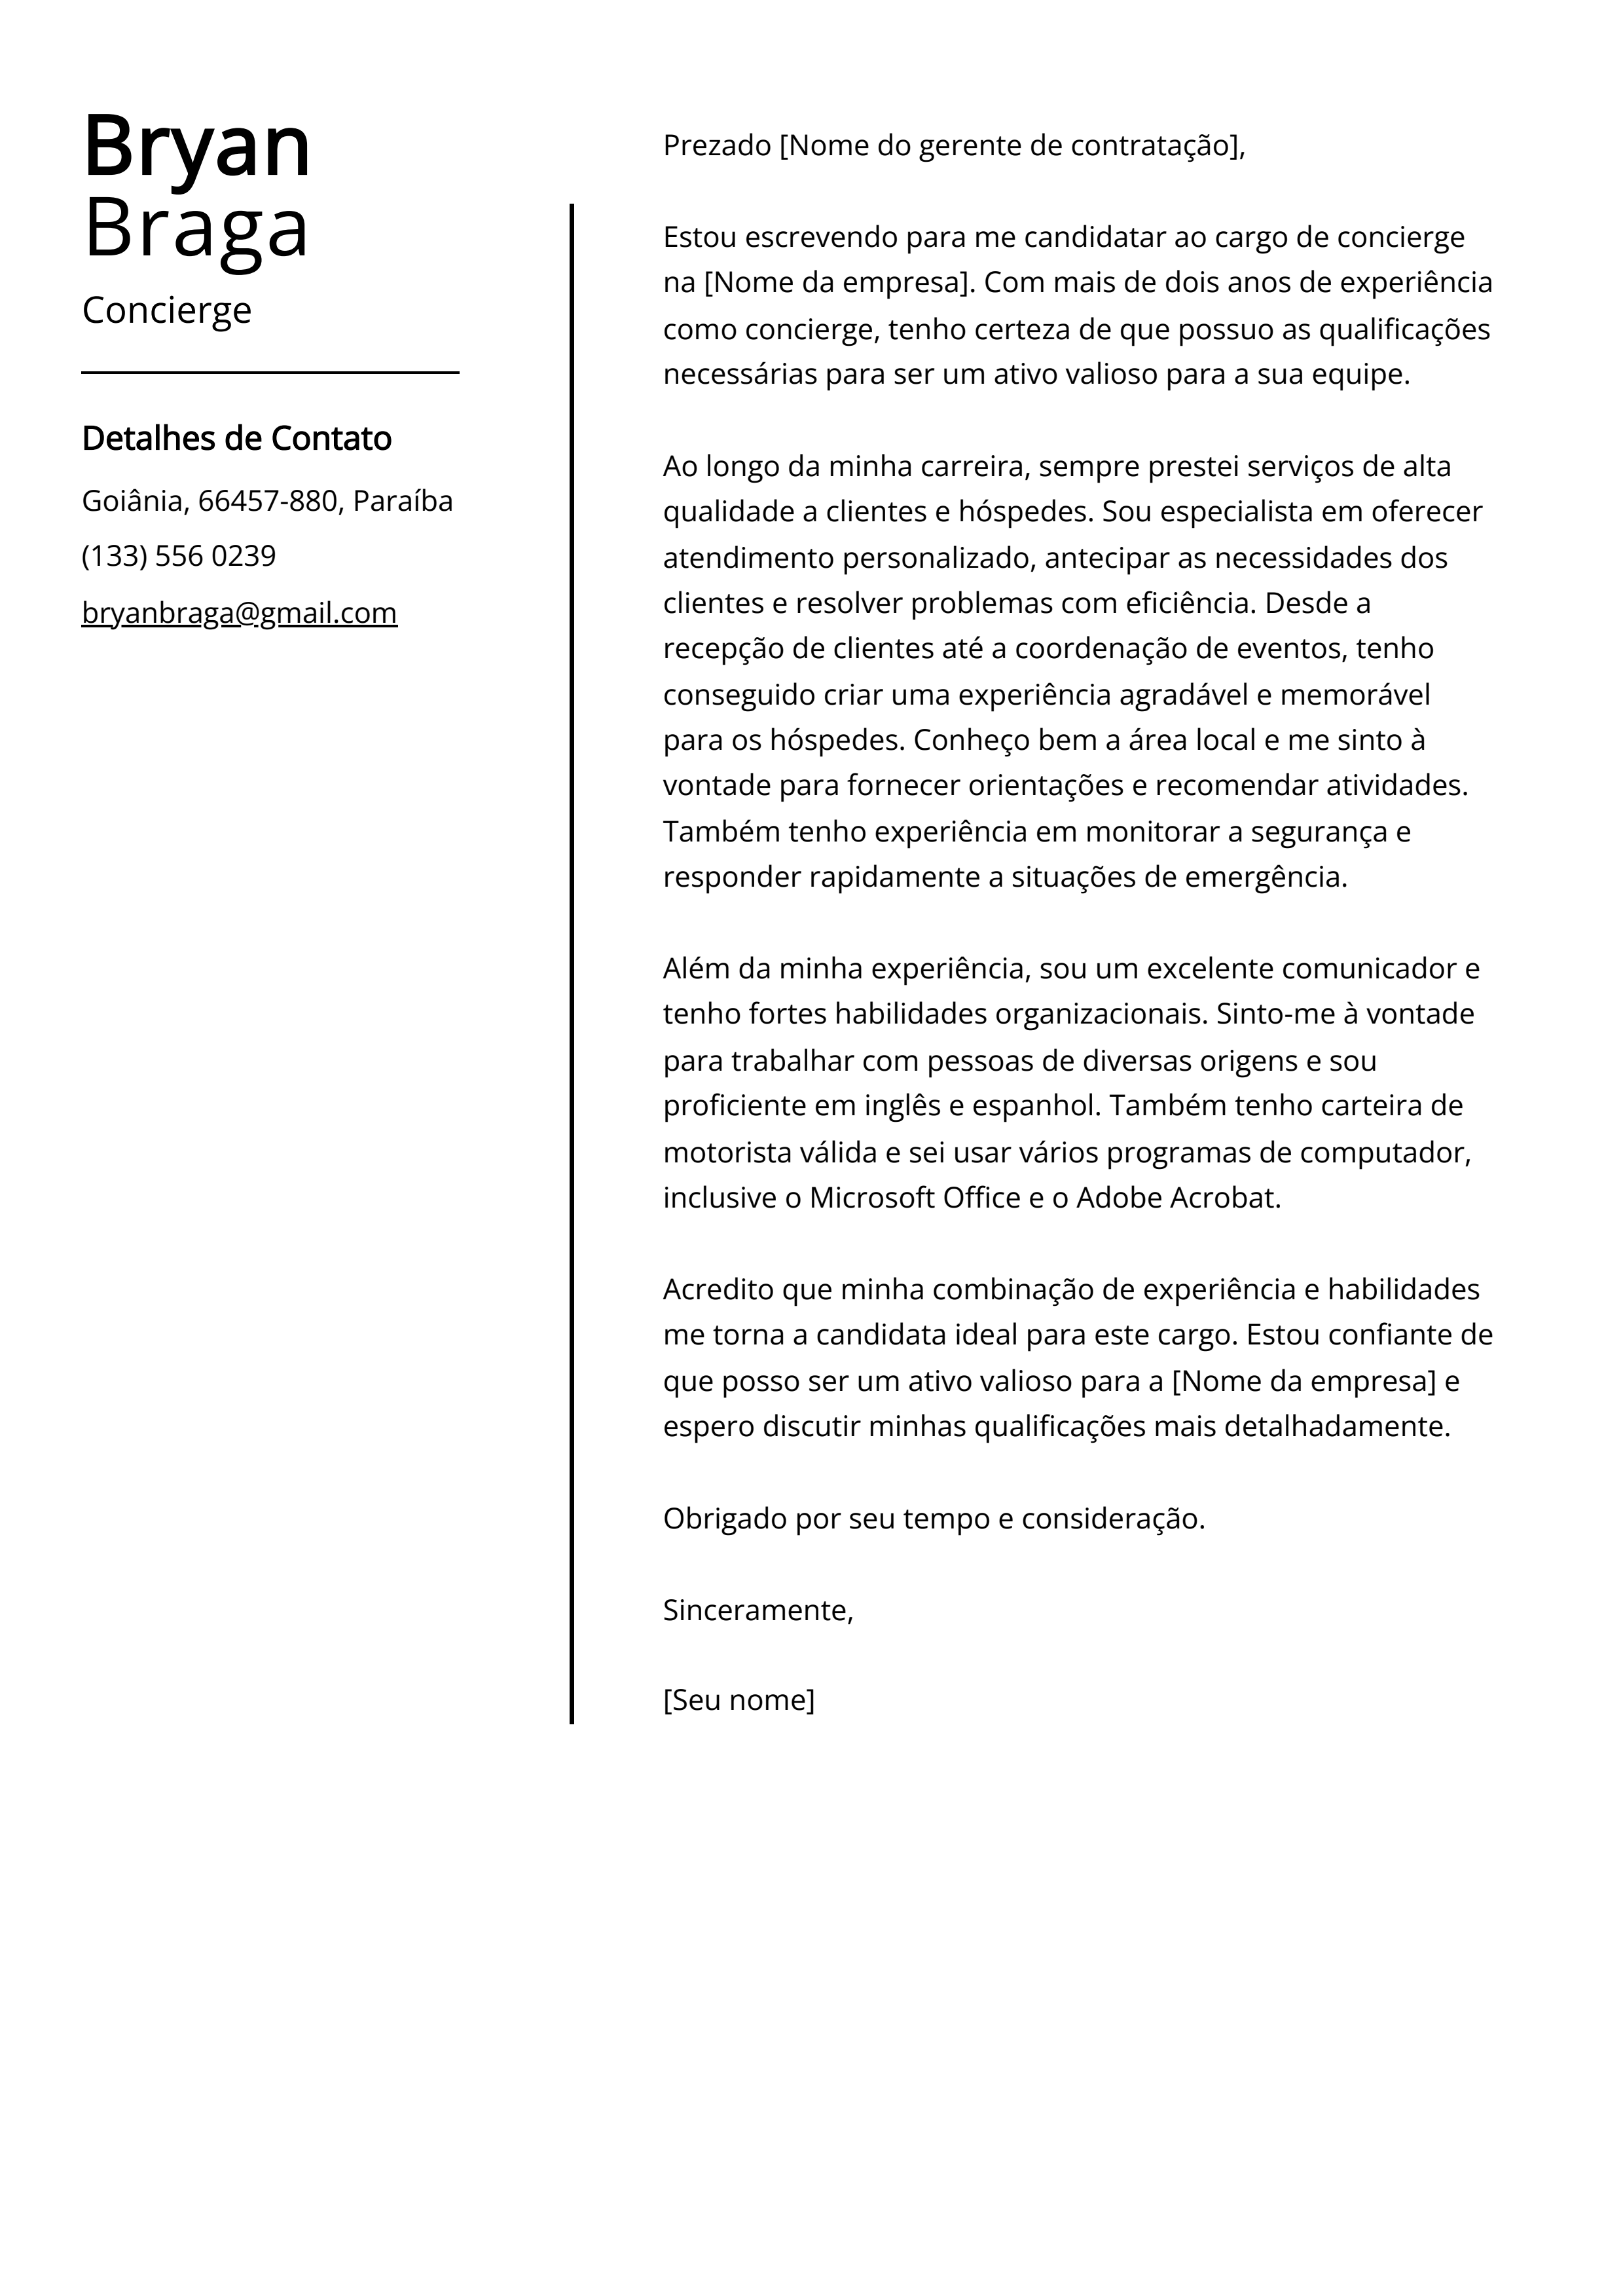 Exemplo de carta de apresentação Concierge